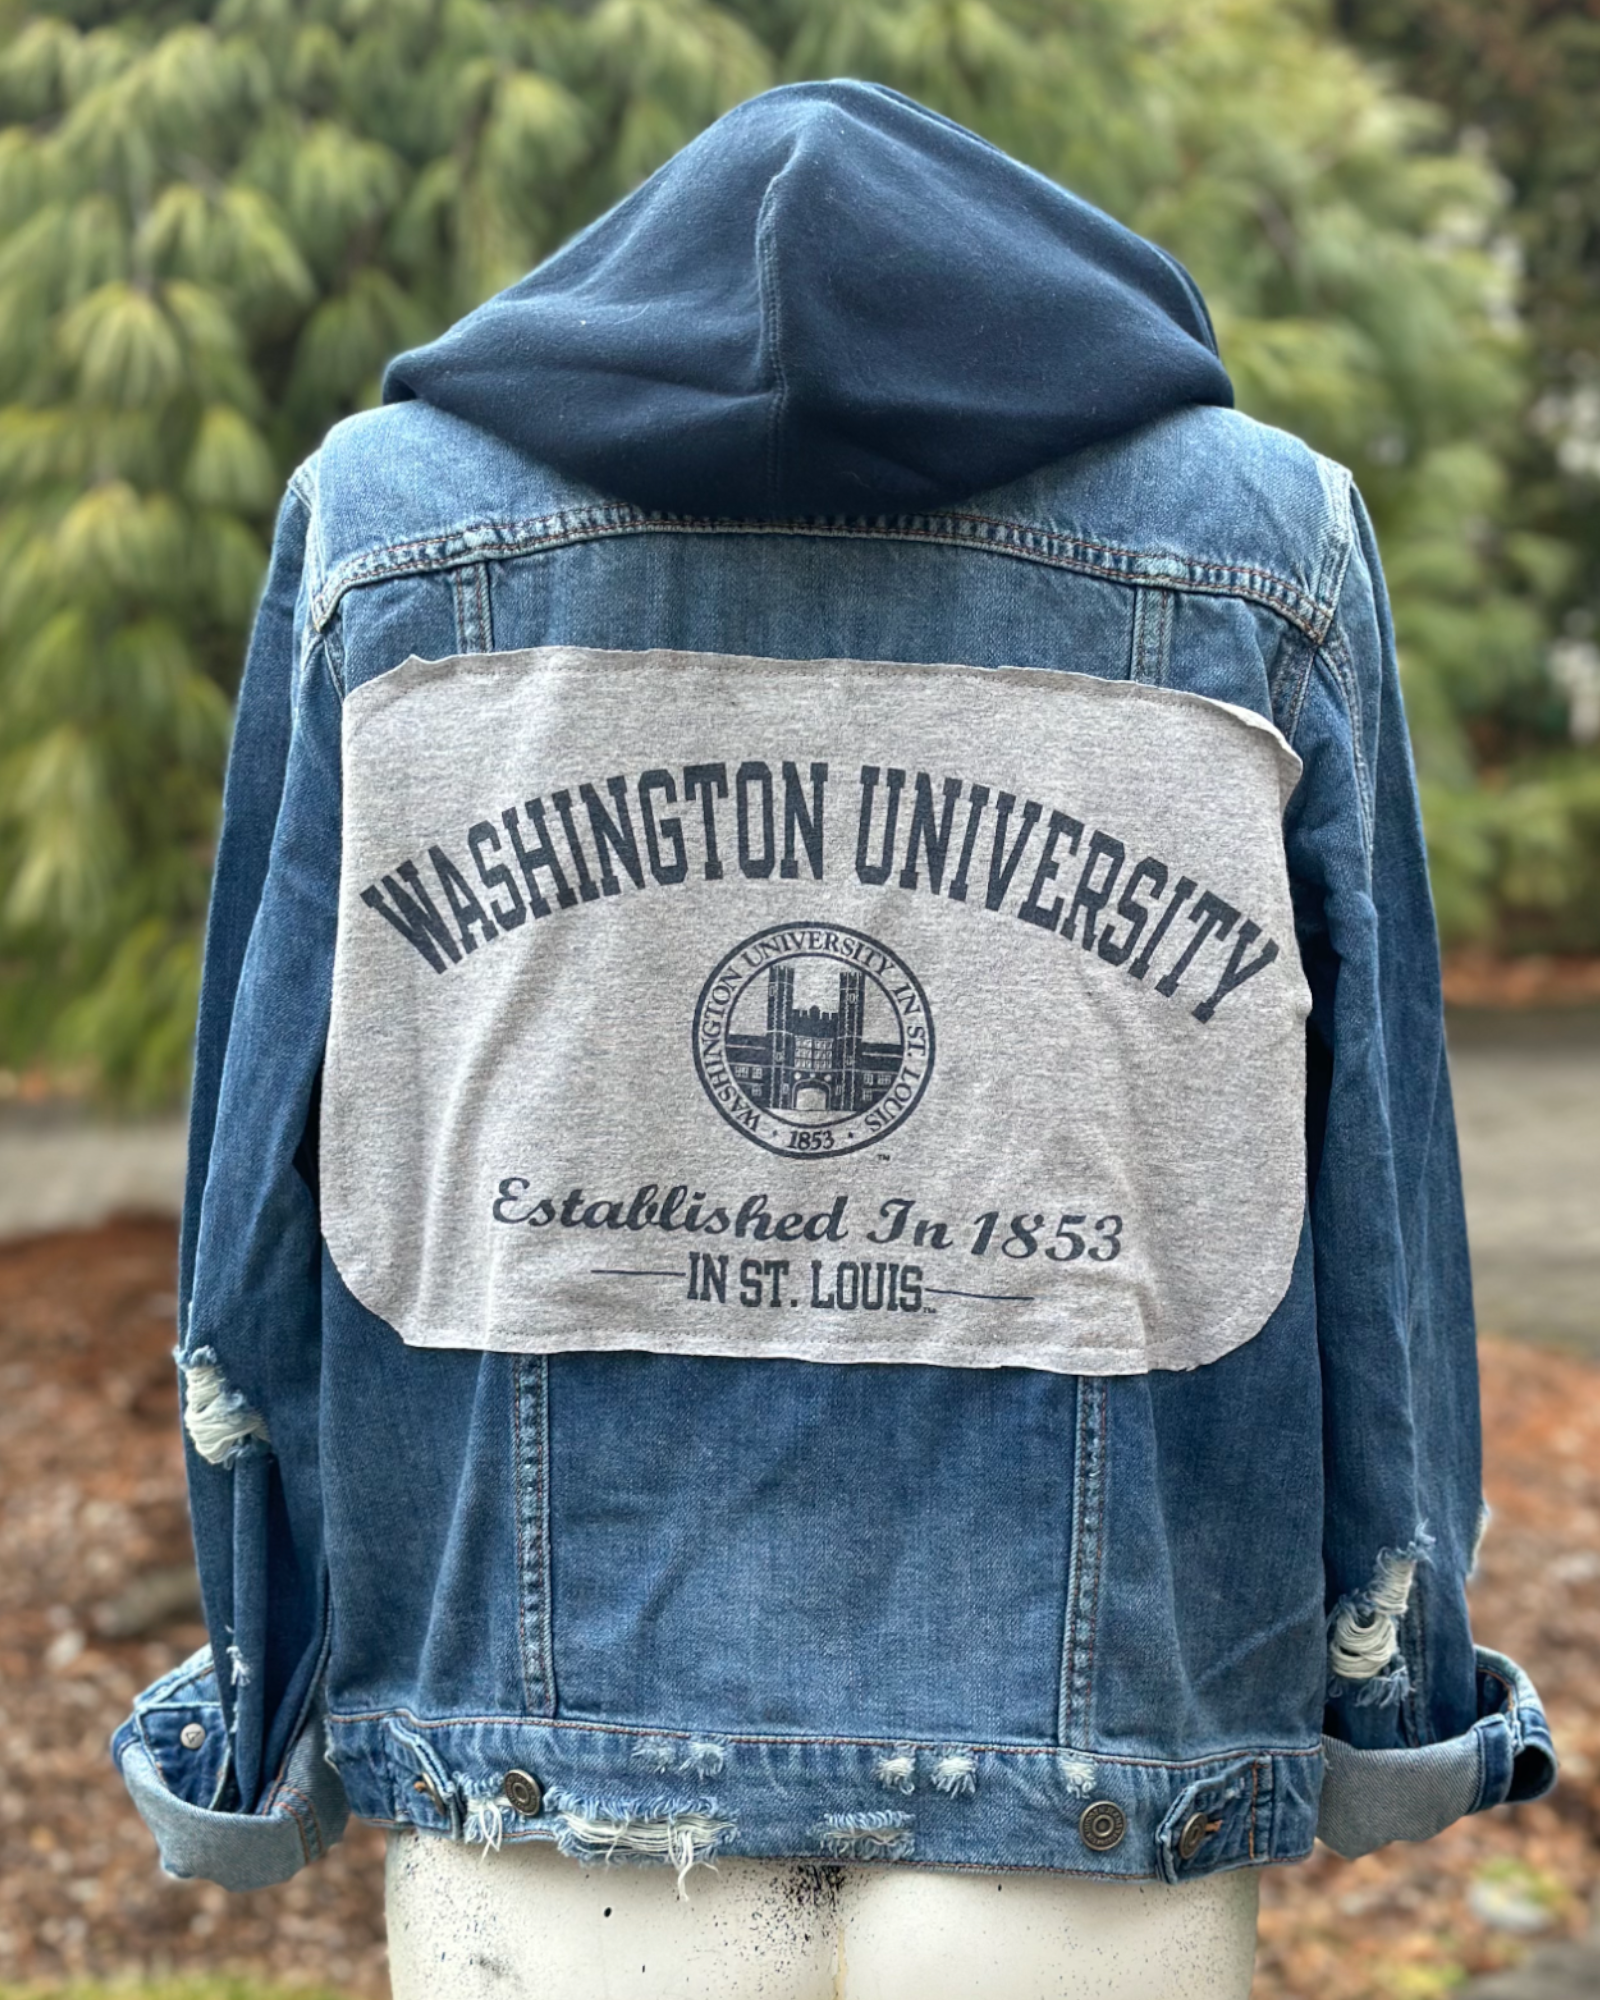 WashU Vintage Sweatshirt – Roadie Couture